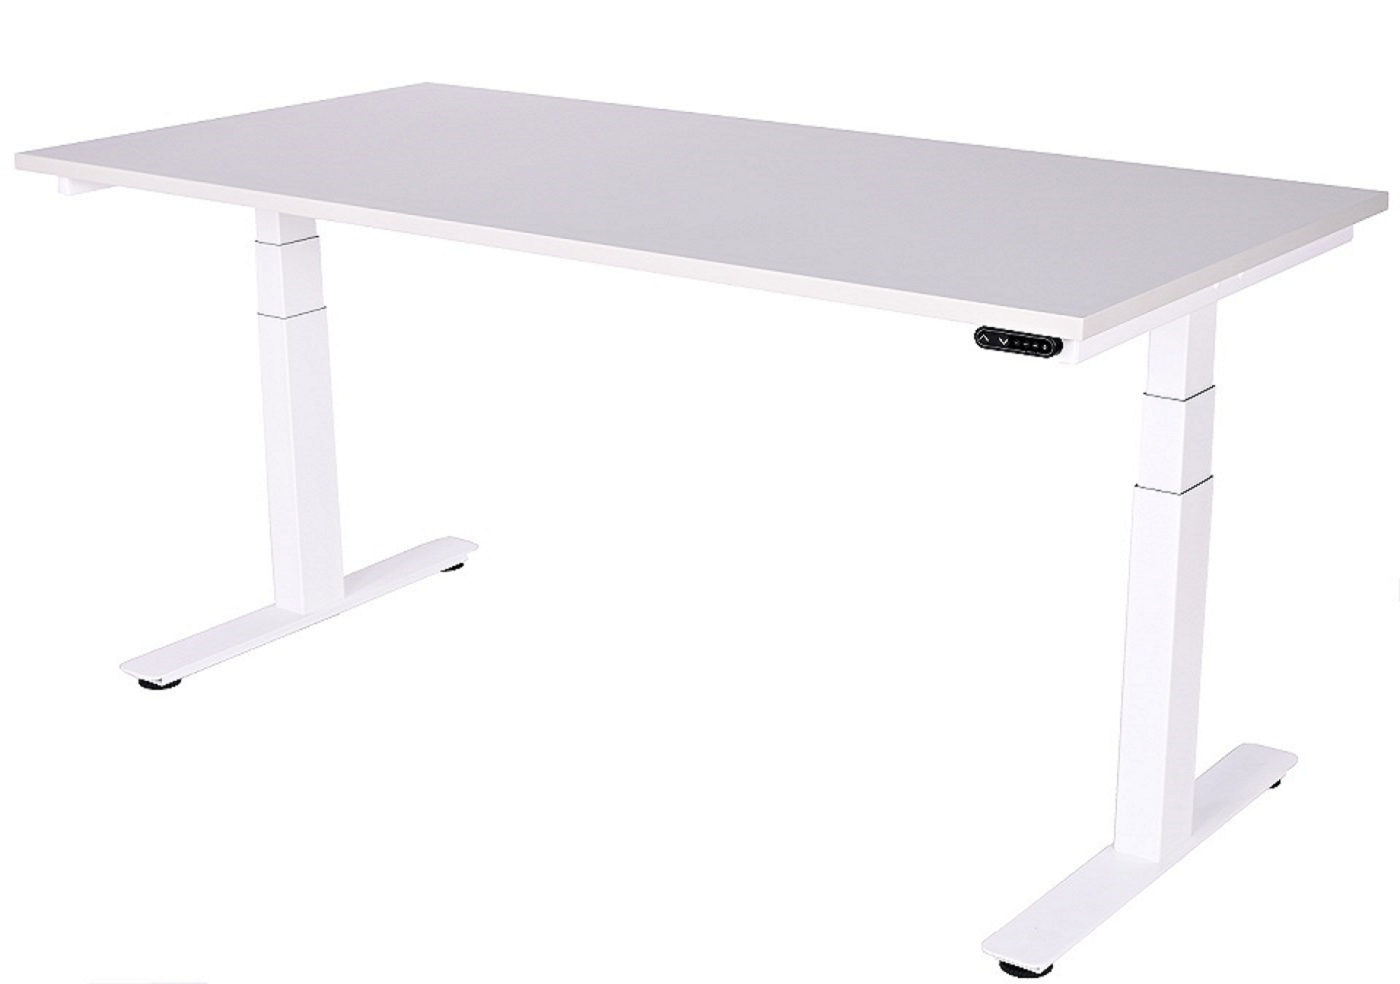 Montážní návod výškově nastavitelný stůl DeskTherapy D5 a D6+